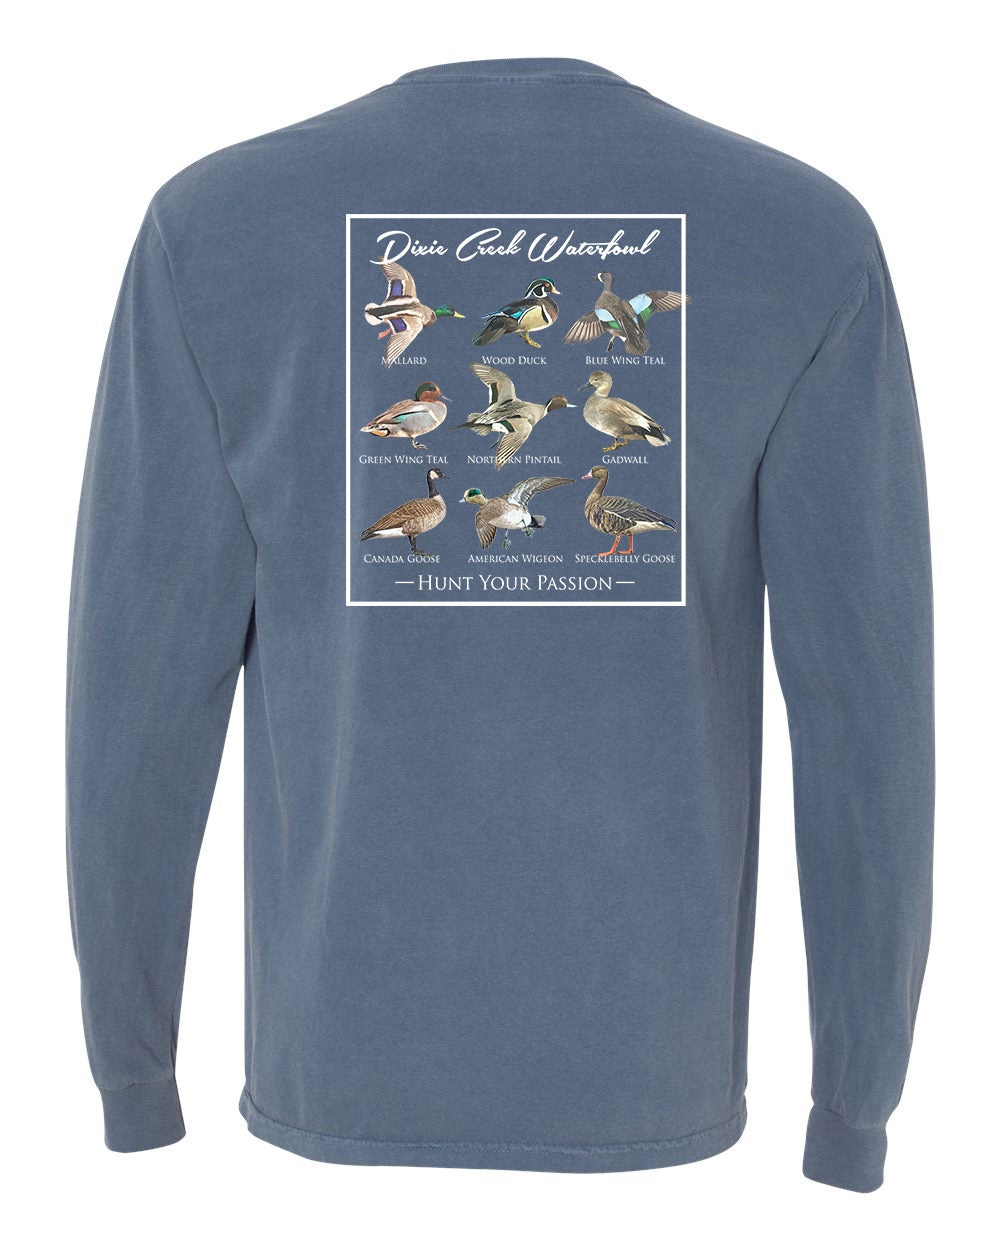 Wood Duck Short Sleeve T-Shirt - Azure Blue